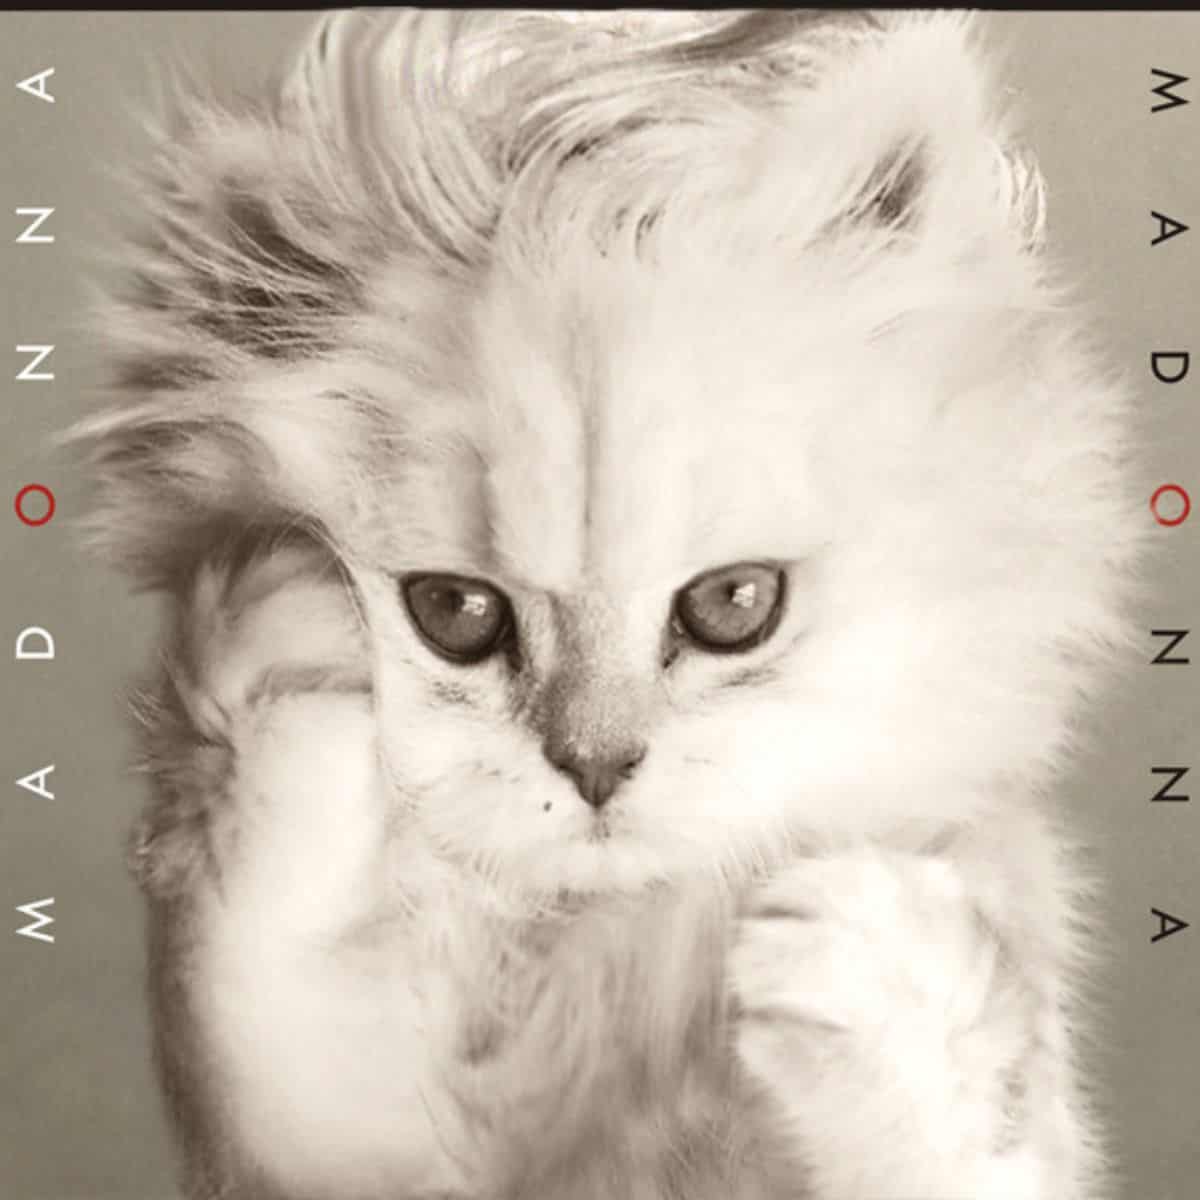 cat version of madonna's album cover